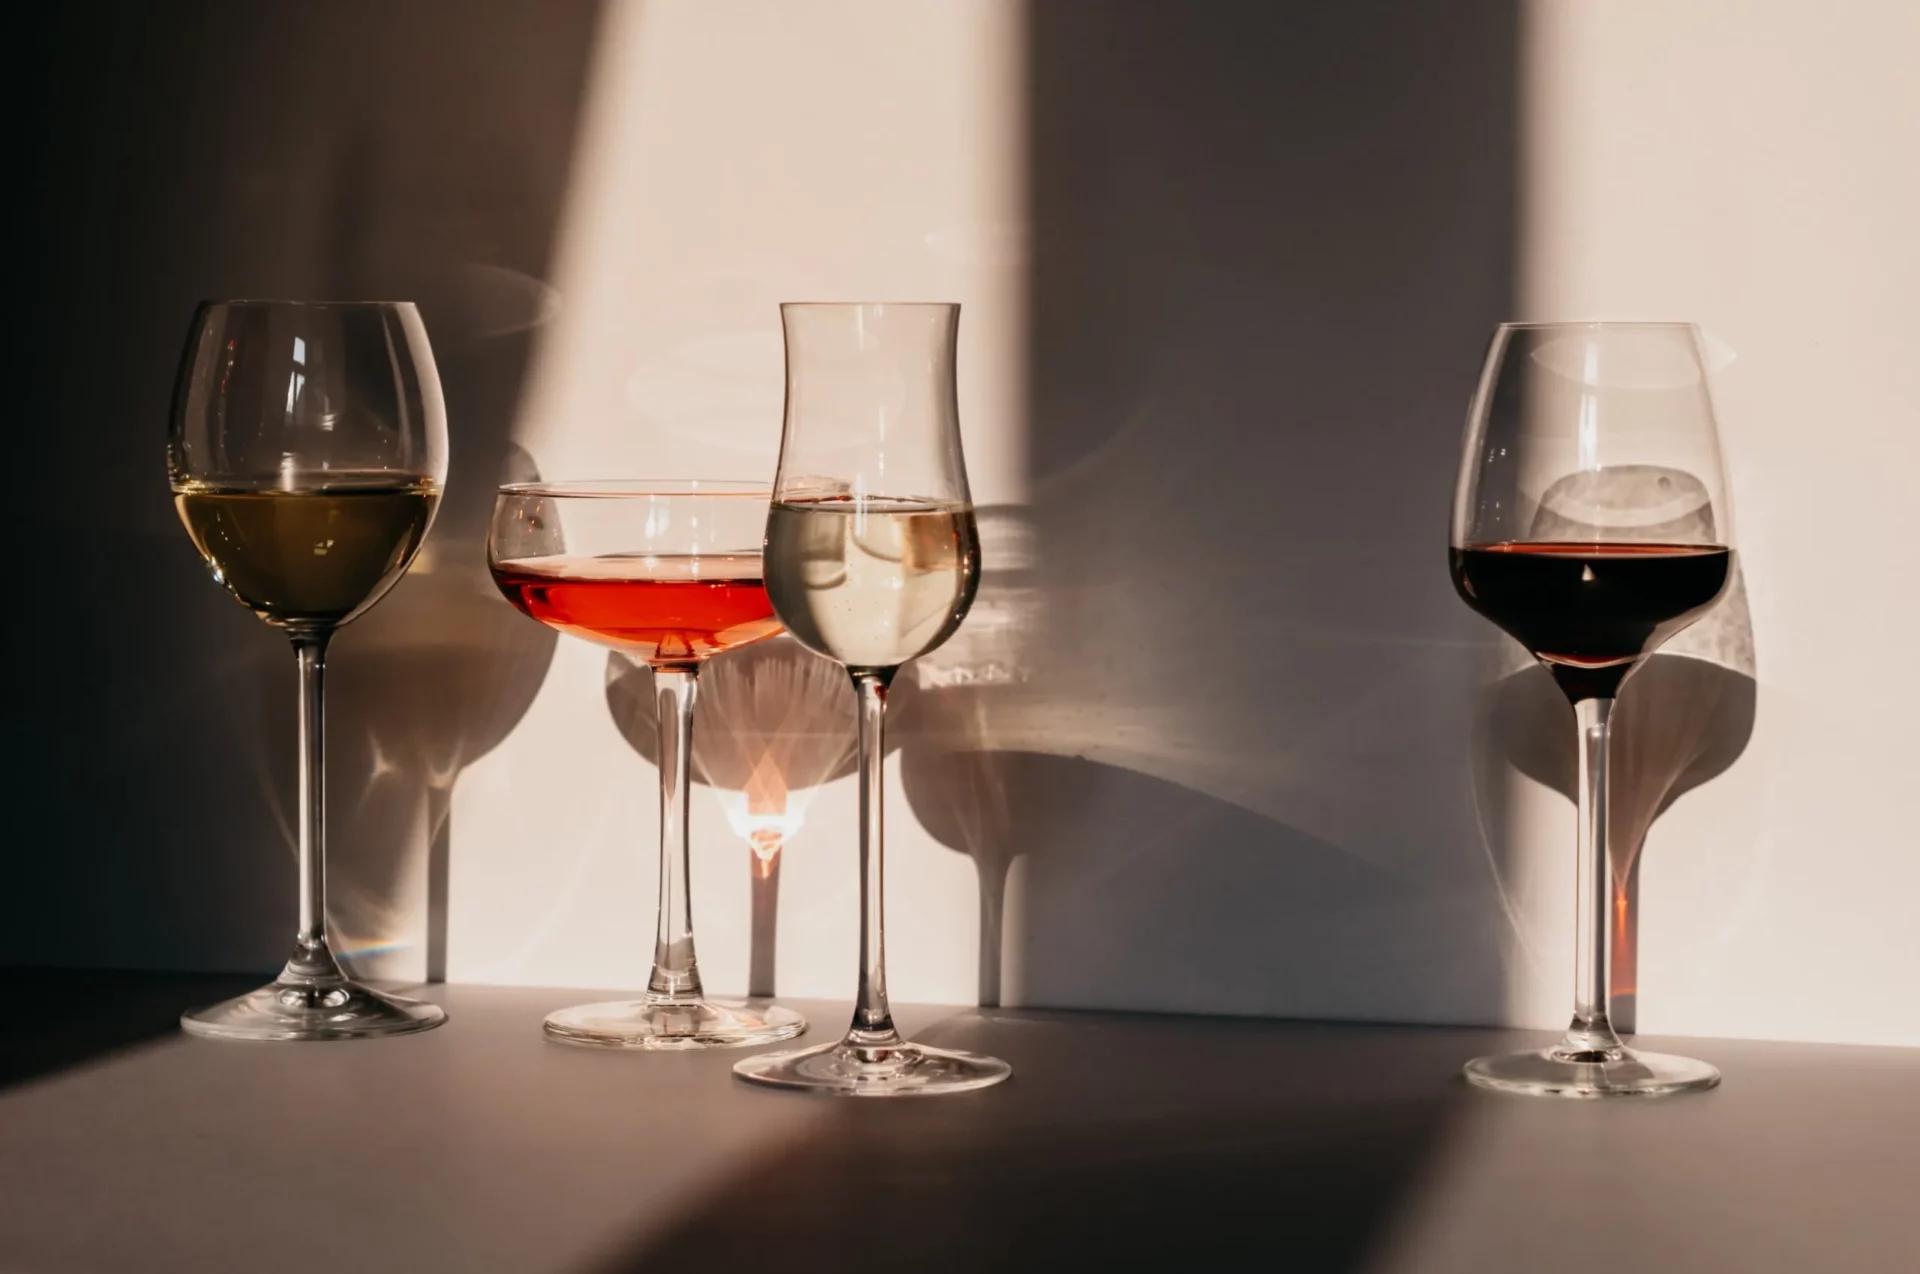 兩地的葡萄酒文化 - WineNow HK 專欄文章